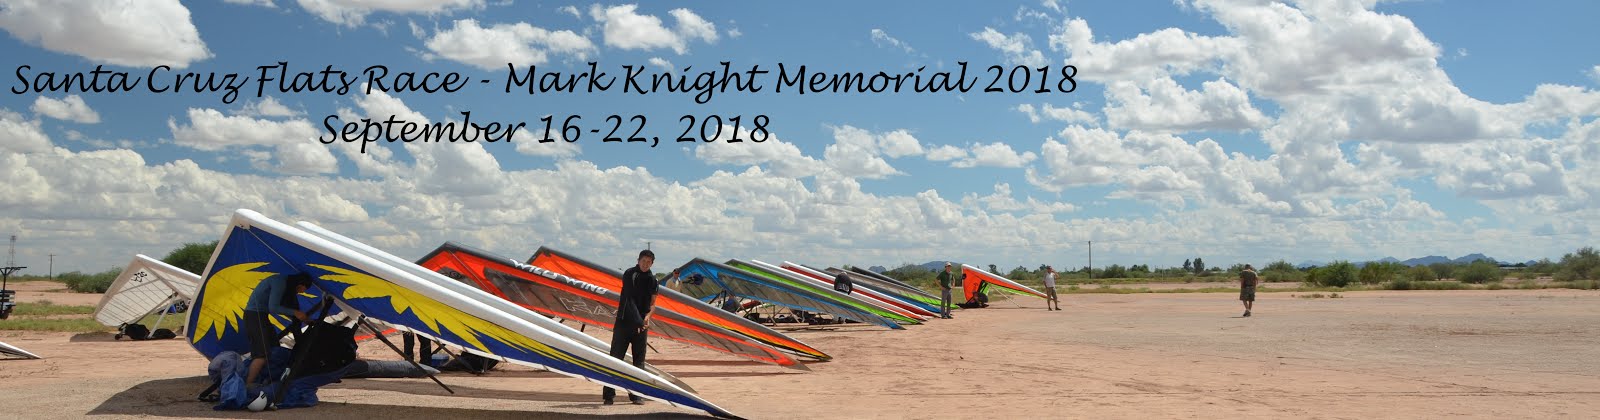 Santa Cruz Flats Race - Mark Knight Memorial 2018